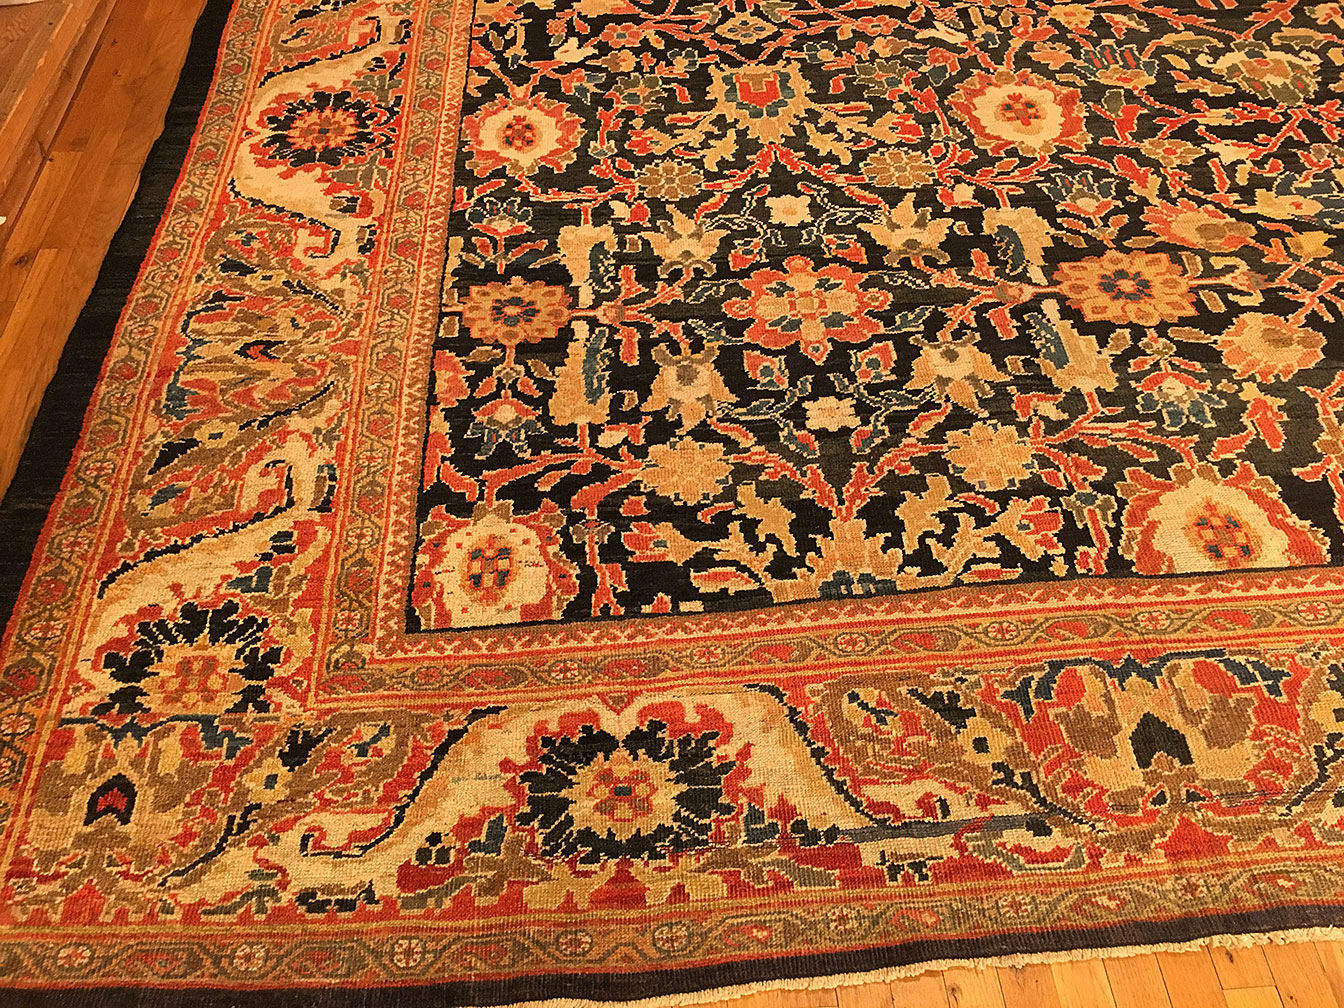 Antique sultan abad Carpet - # 53376